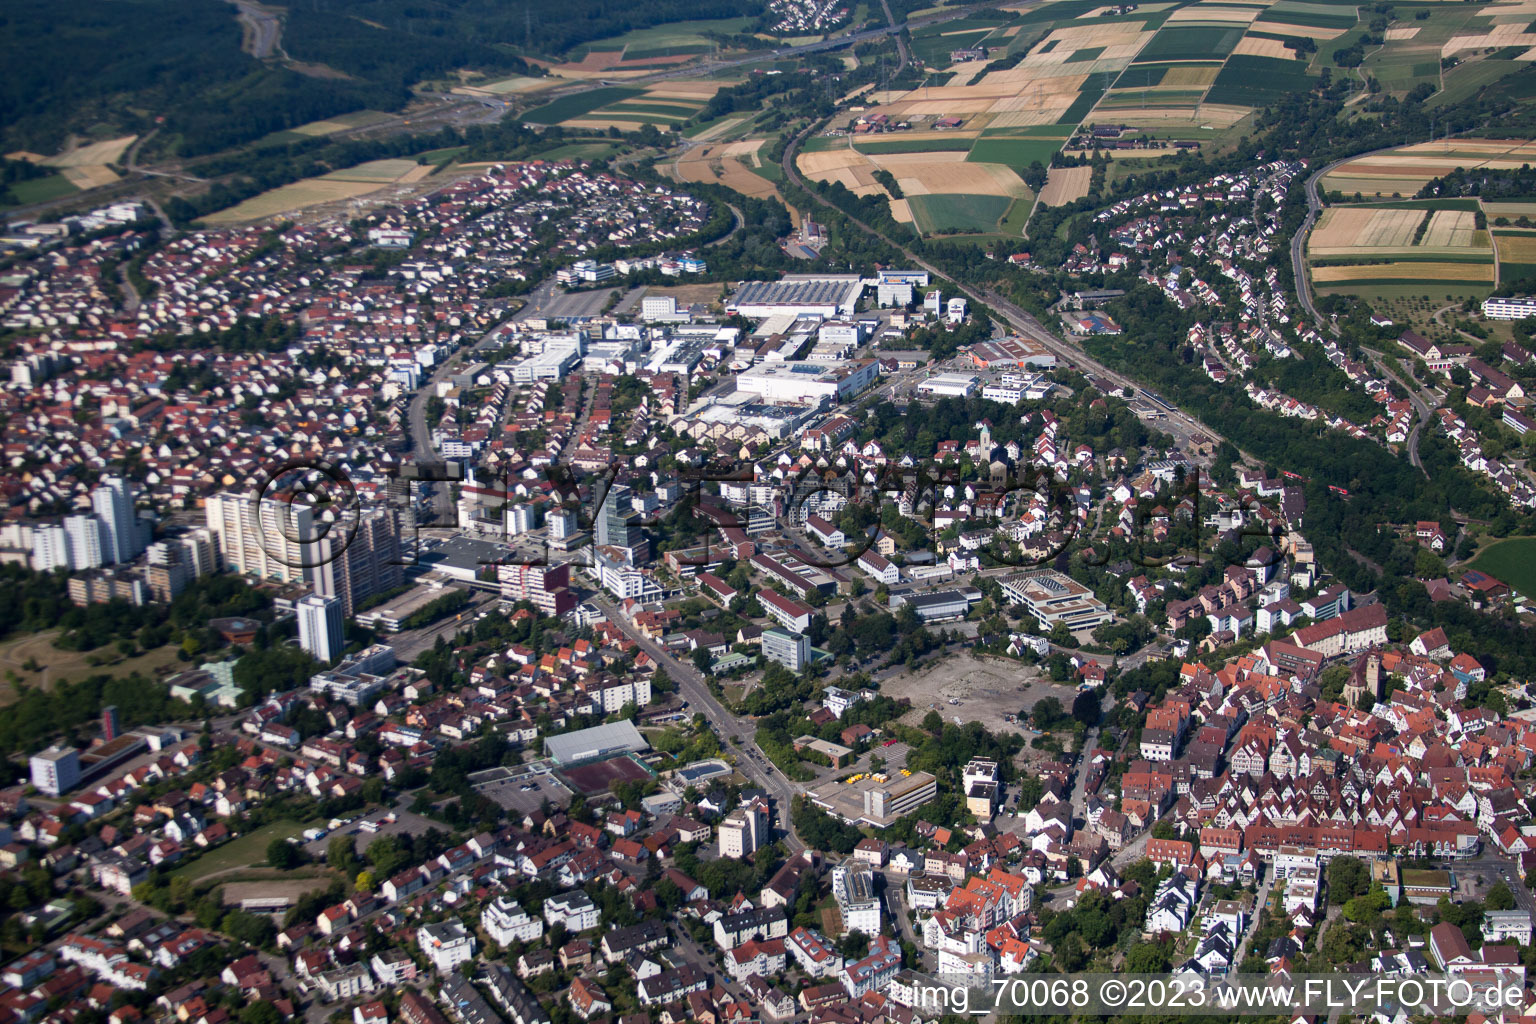 Leonberg im Bundesland Baden-Württemberg, Deutschland aus der Drohnenperspektive